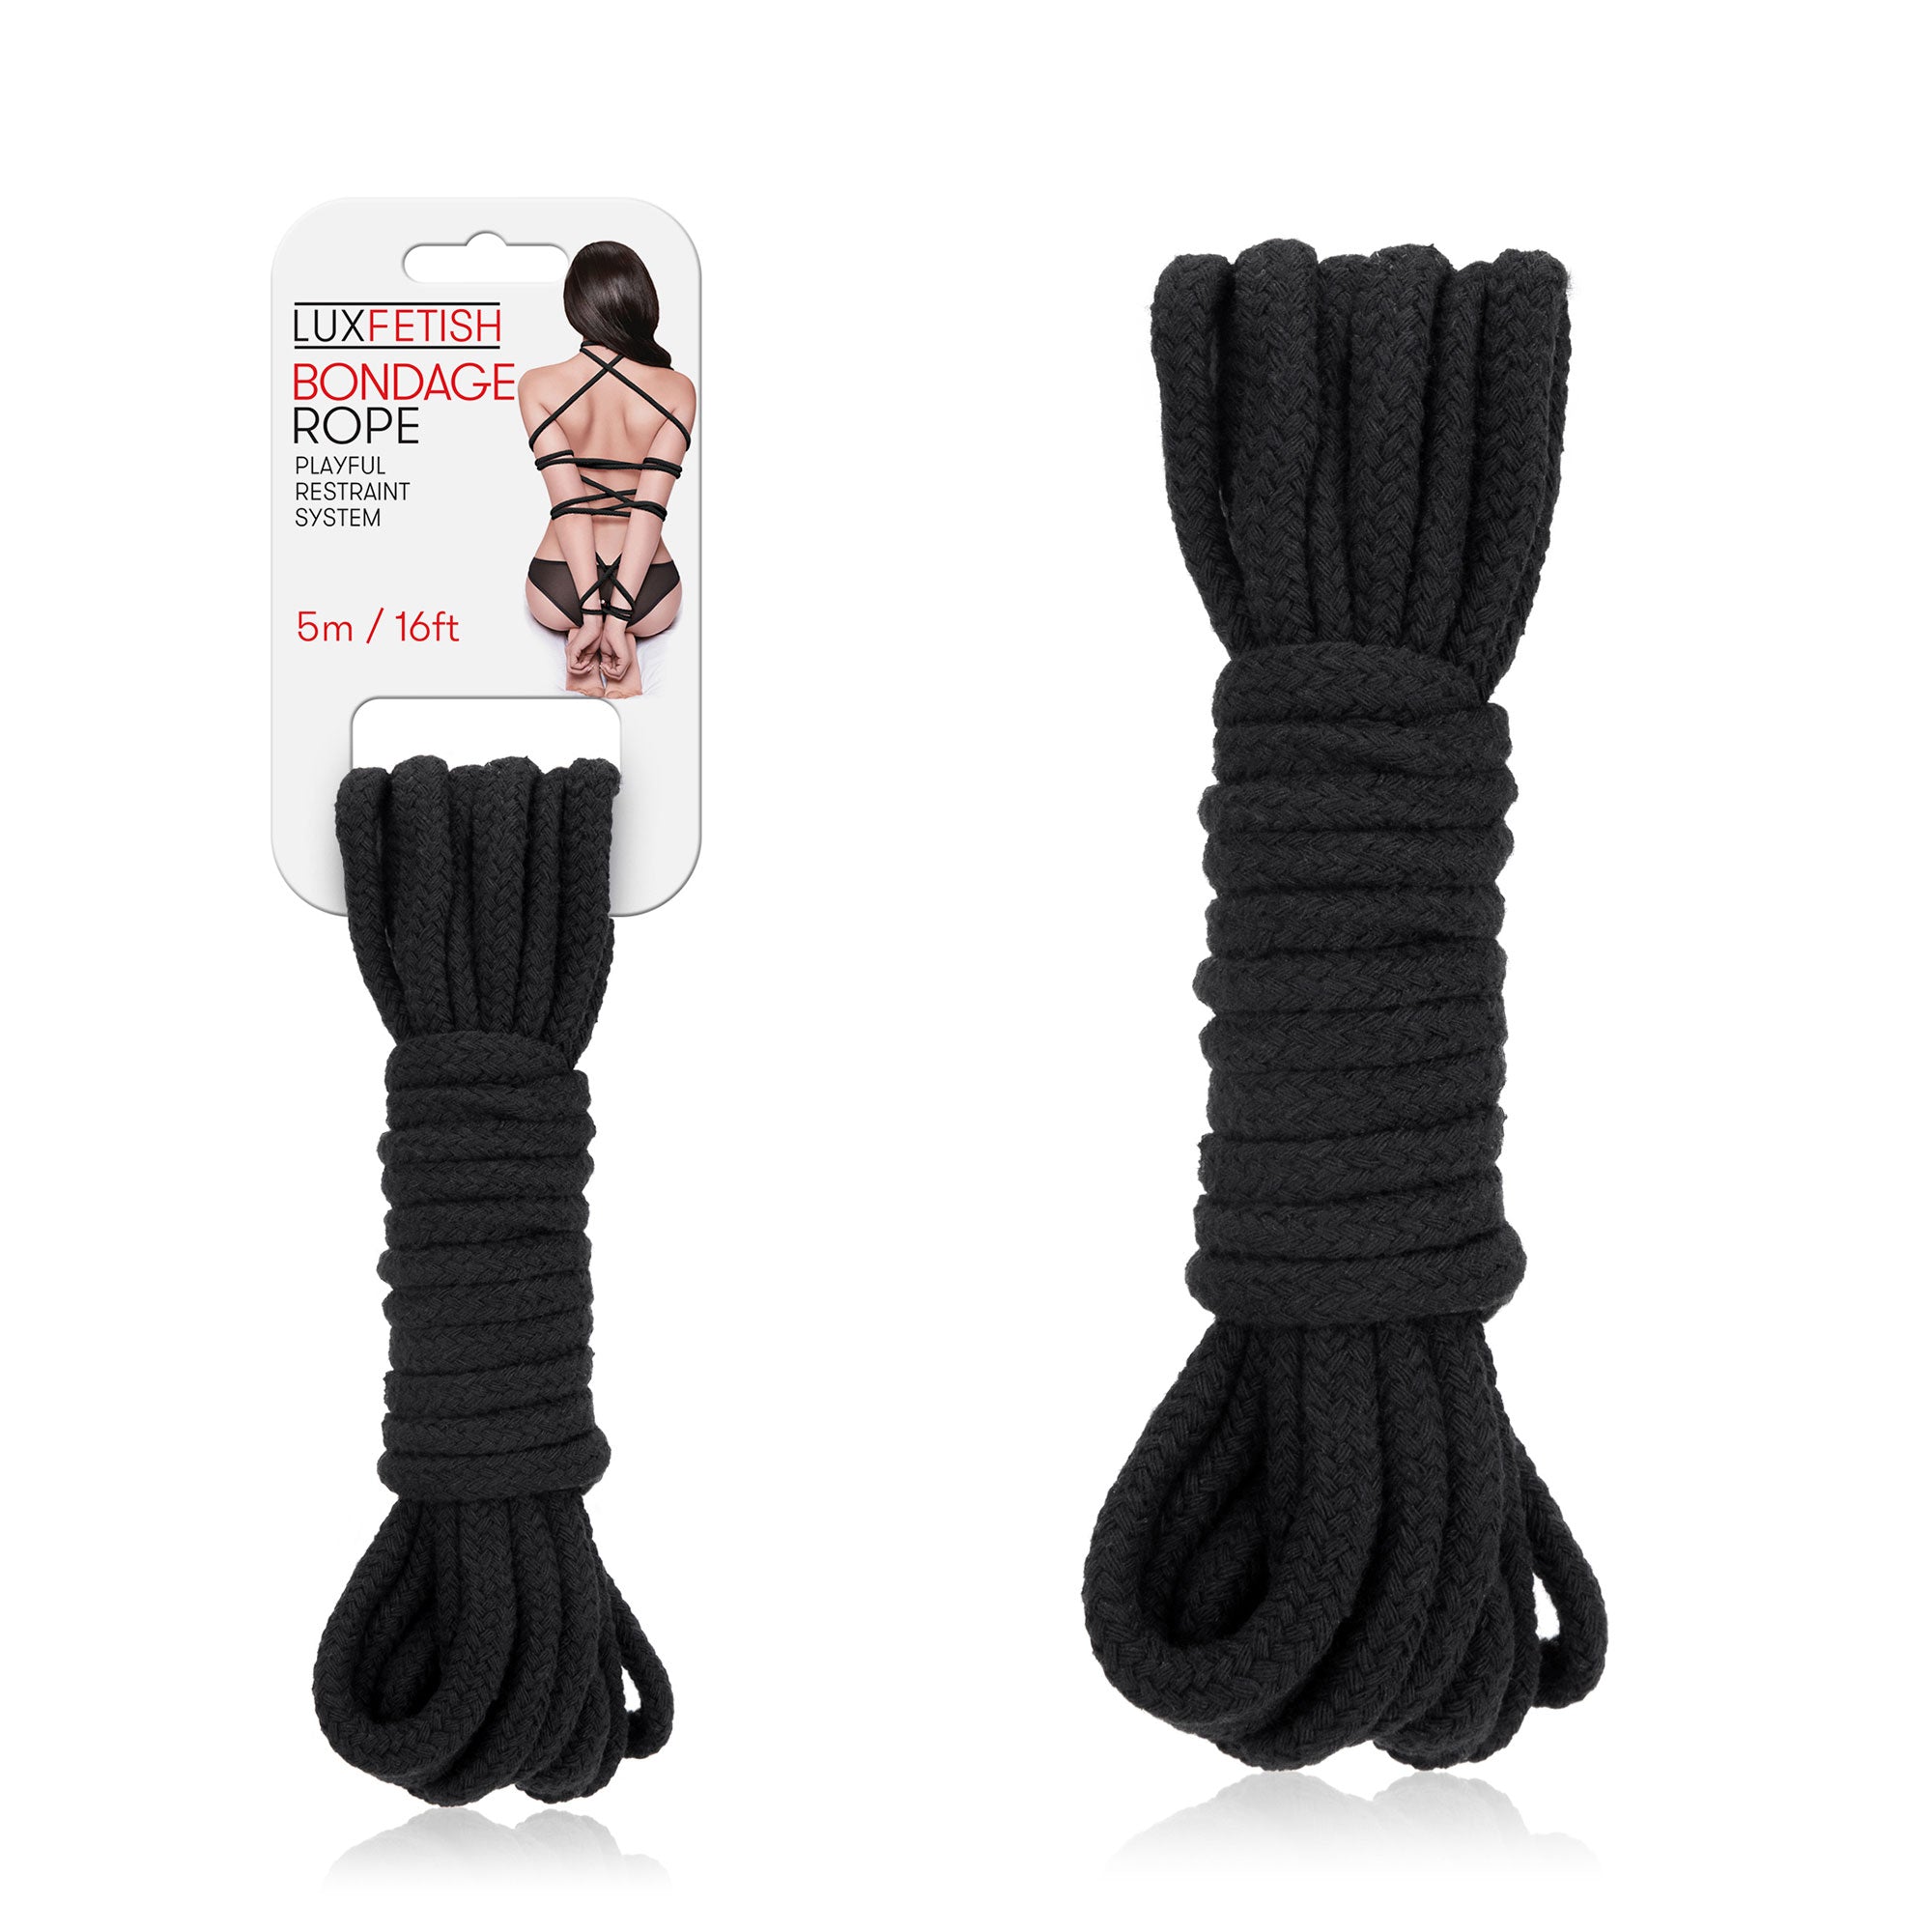 Packaging of Lux Fetish Bondage Rope (5m / 16ft) - Black at glastoy.com